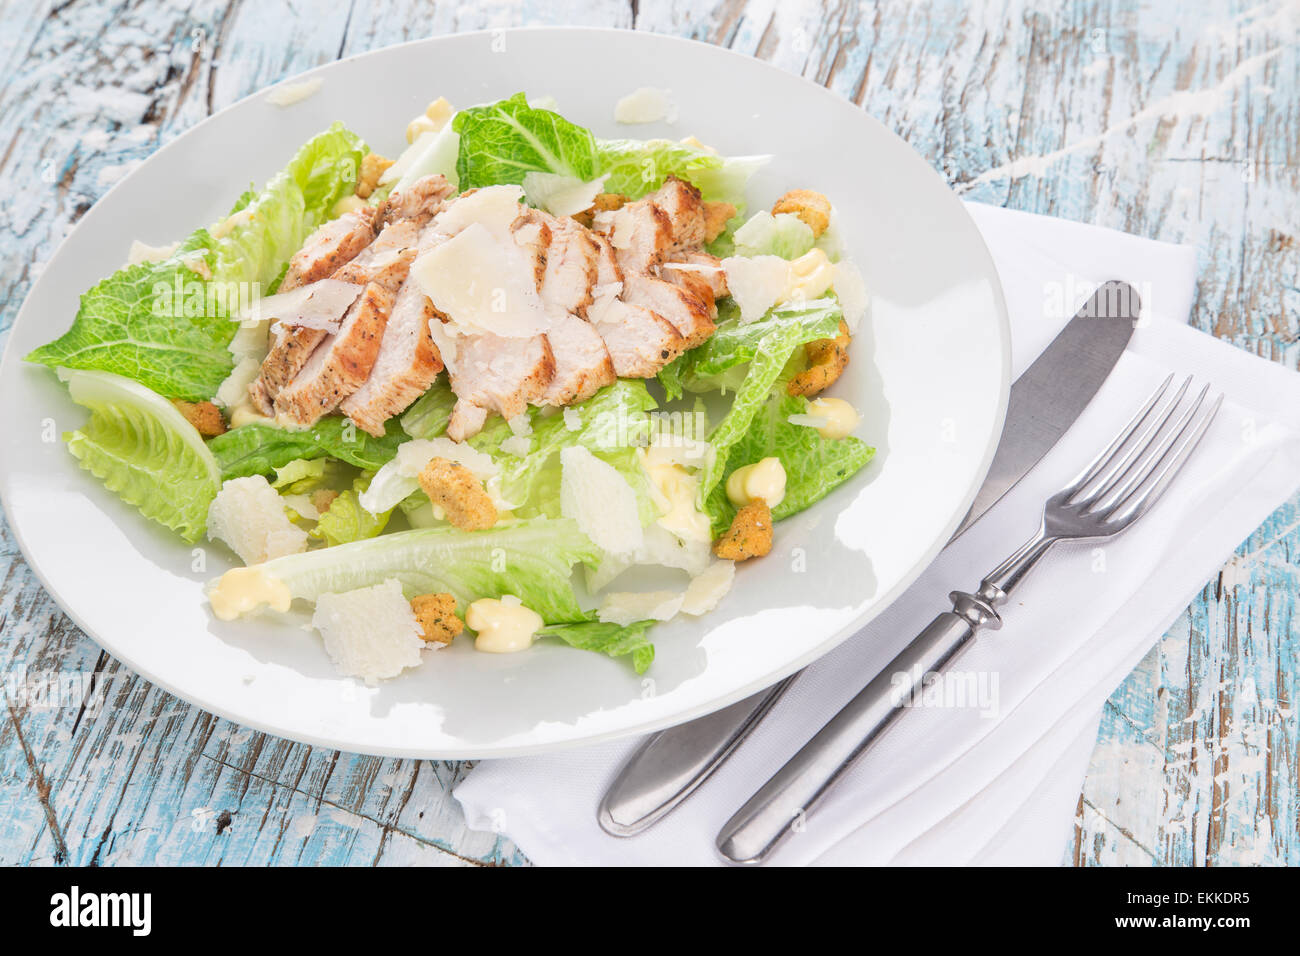 Salade césar avec poulet et verts sur table en bois Banque D'Images